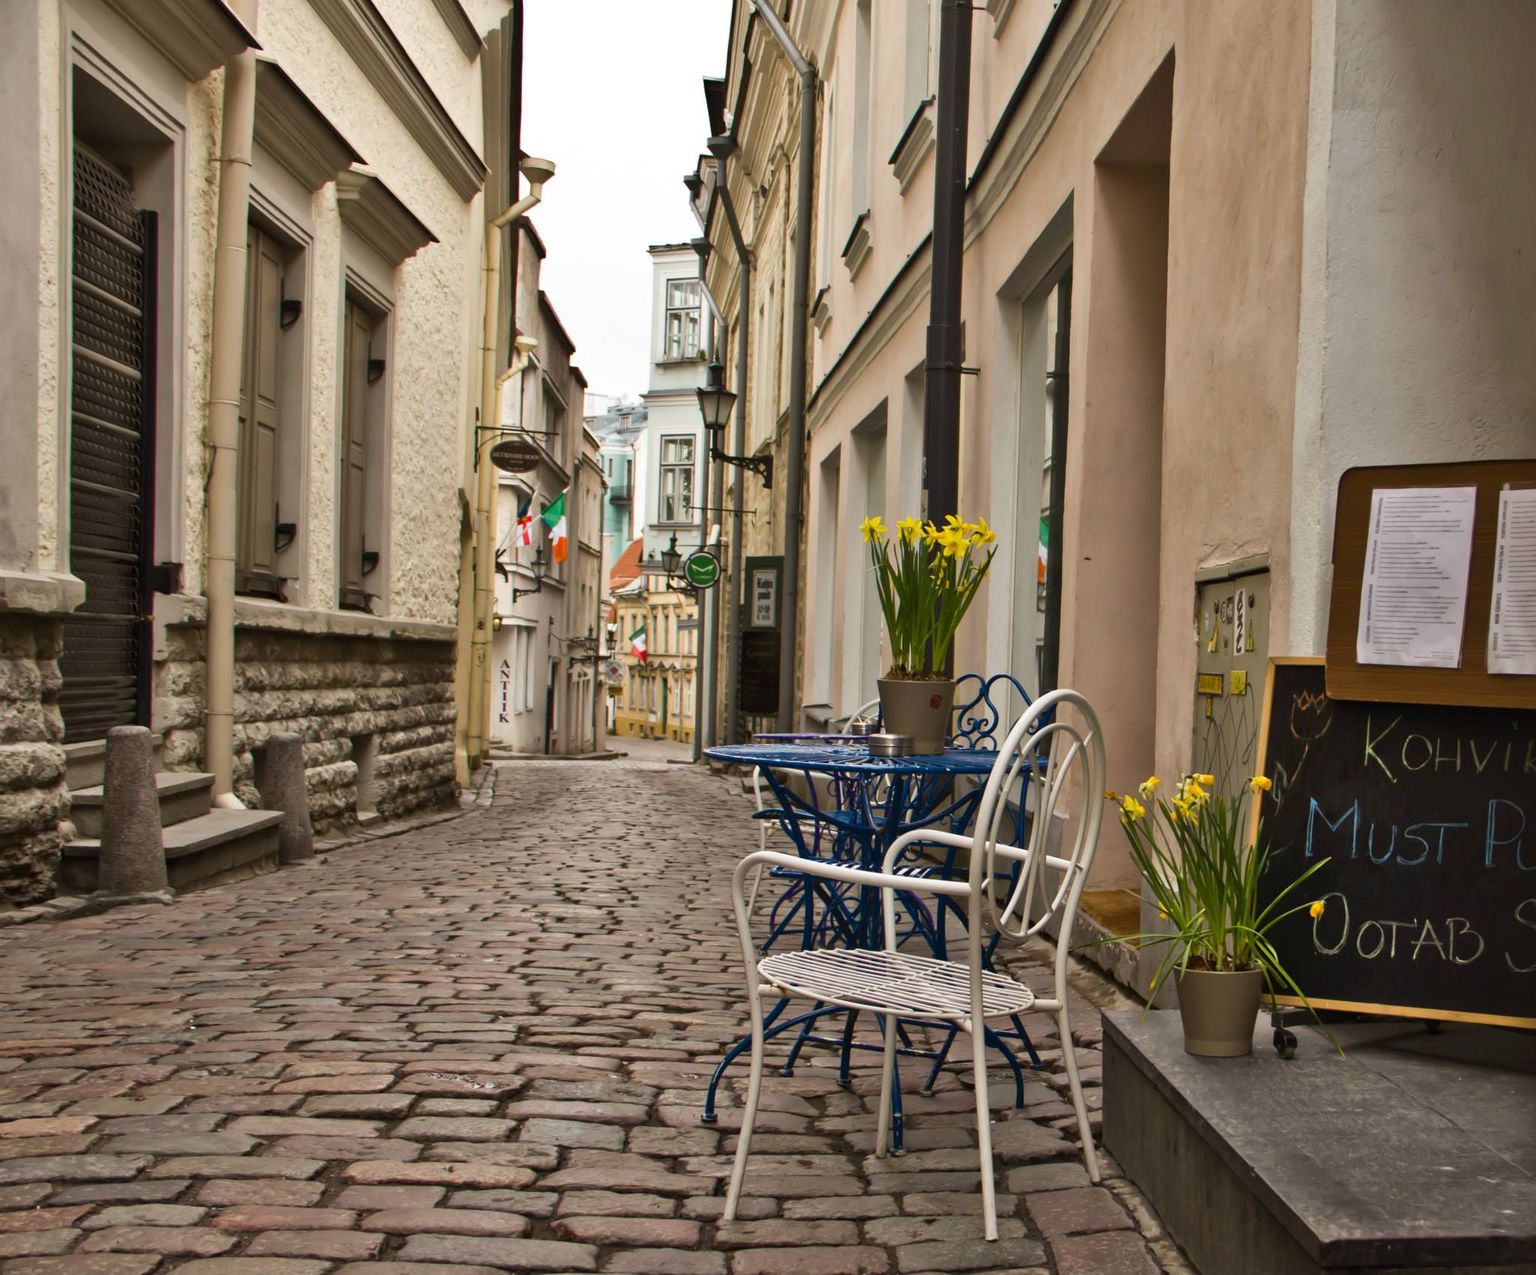 Tallinna kohvik Must Puudel